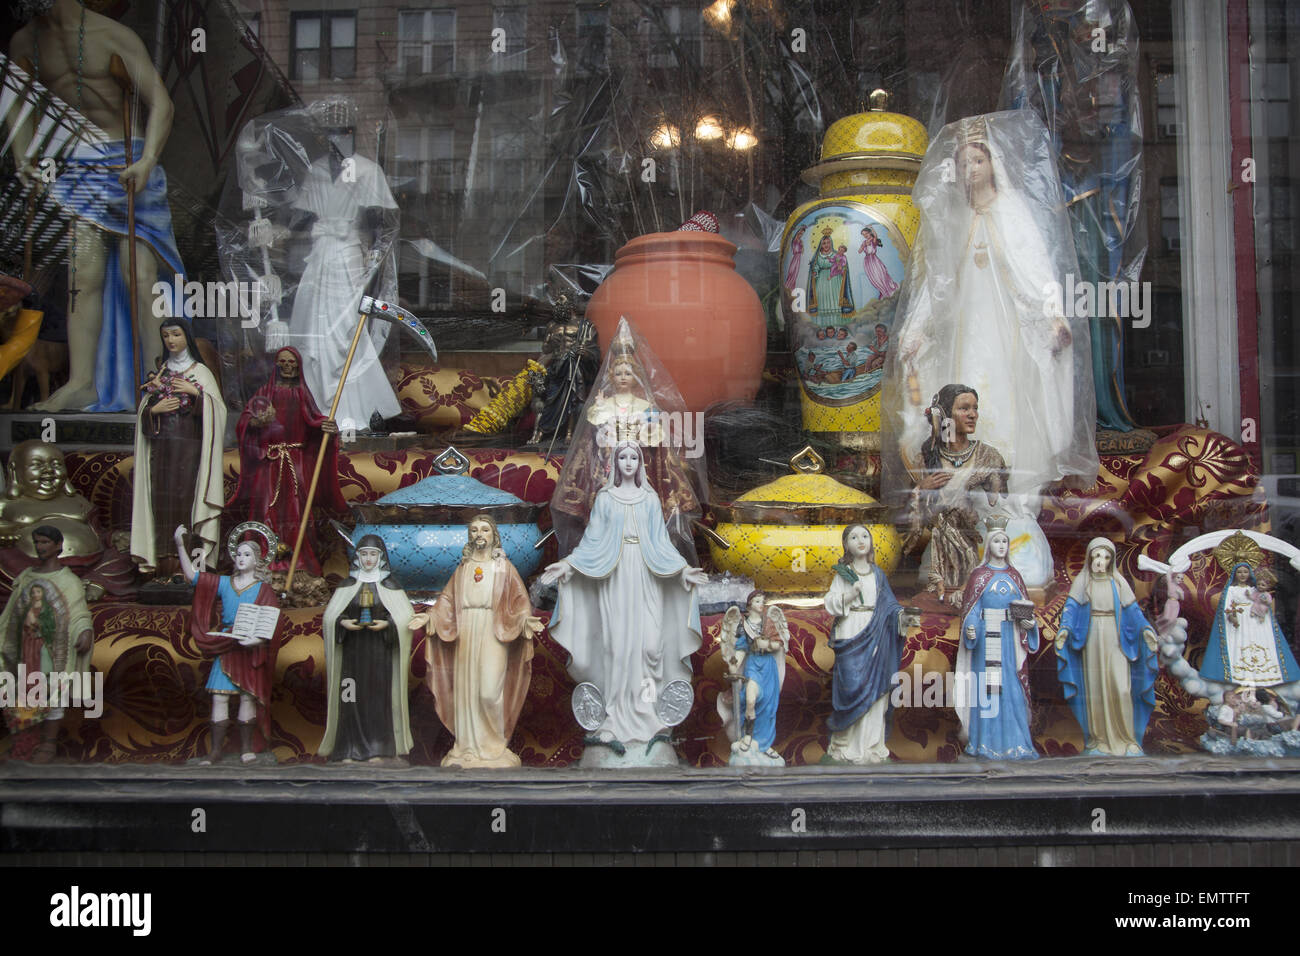 Geschäft, das religiöse Statuen und andere Gegenstände für religiös devotional Praxis verkauft. Stockfoto